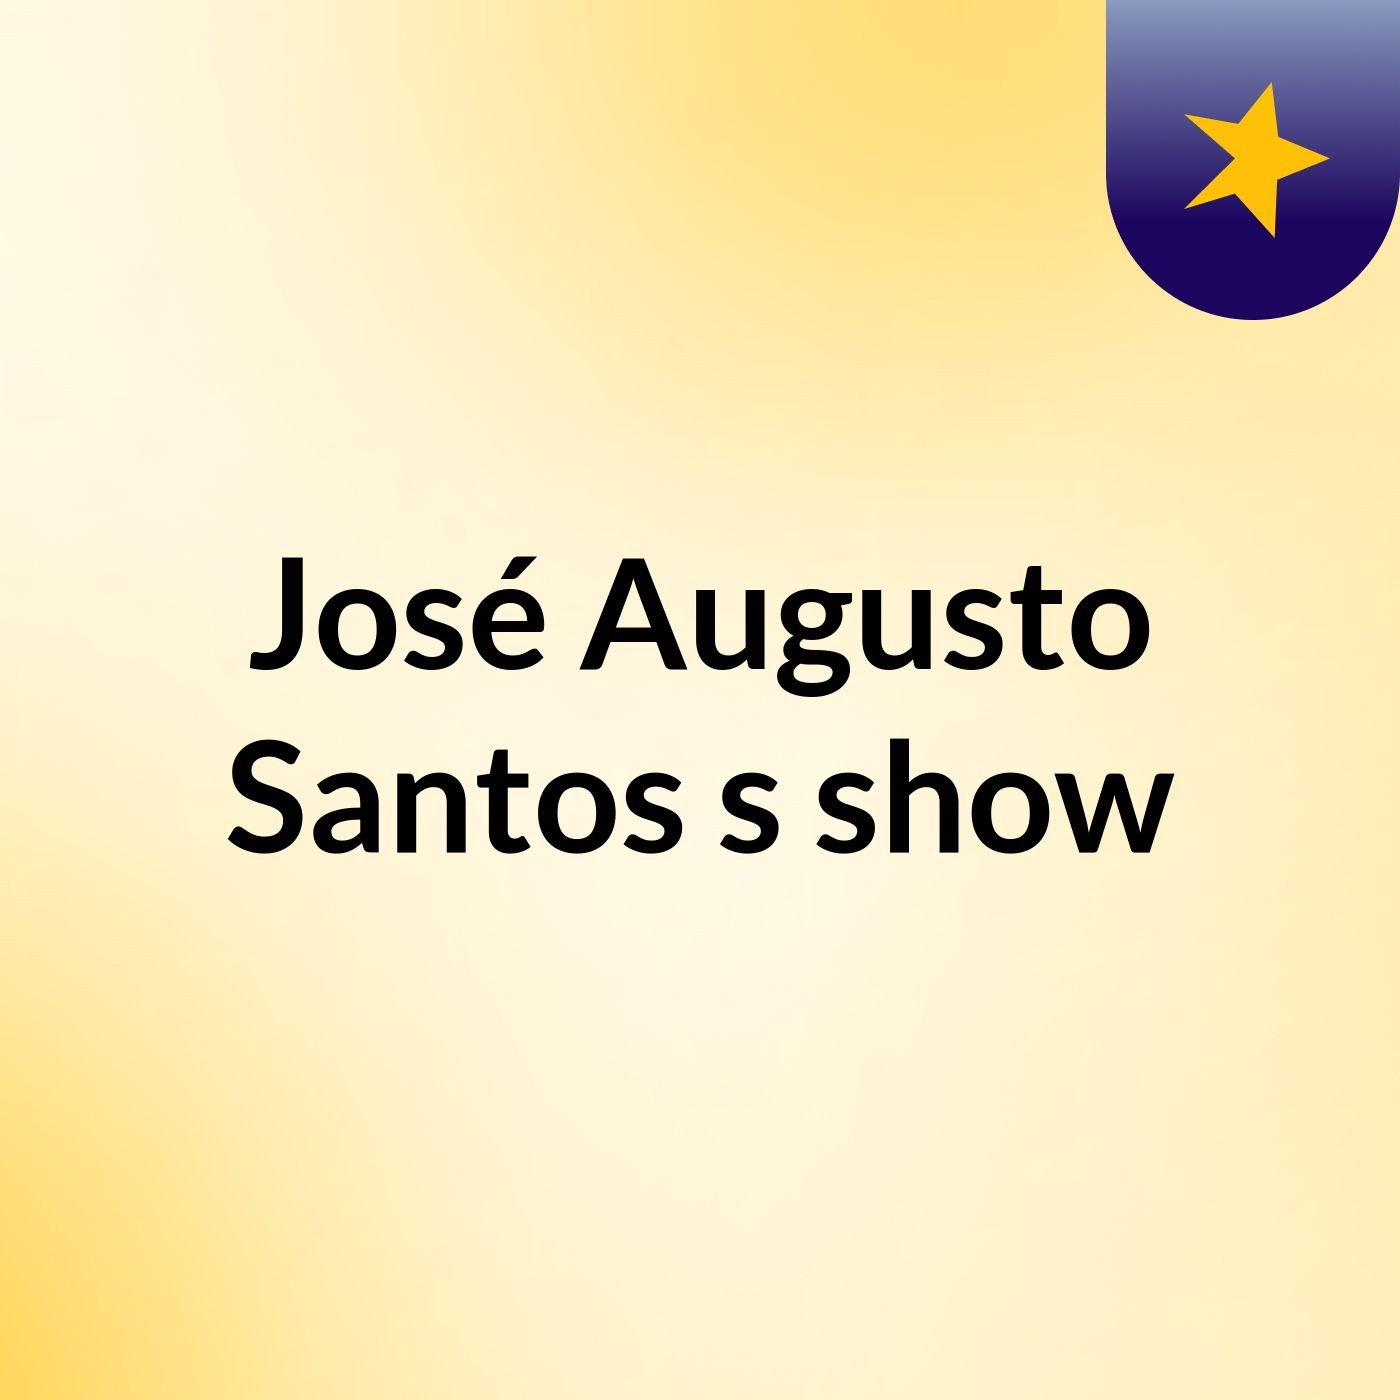 José Augusto Santos's show